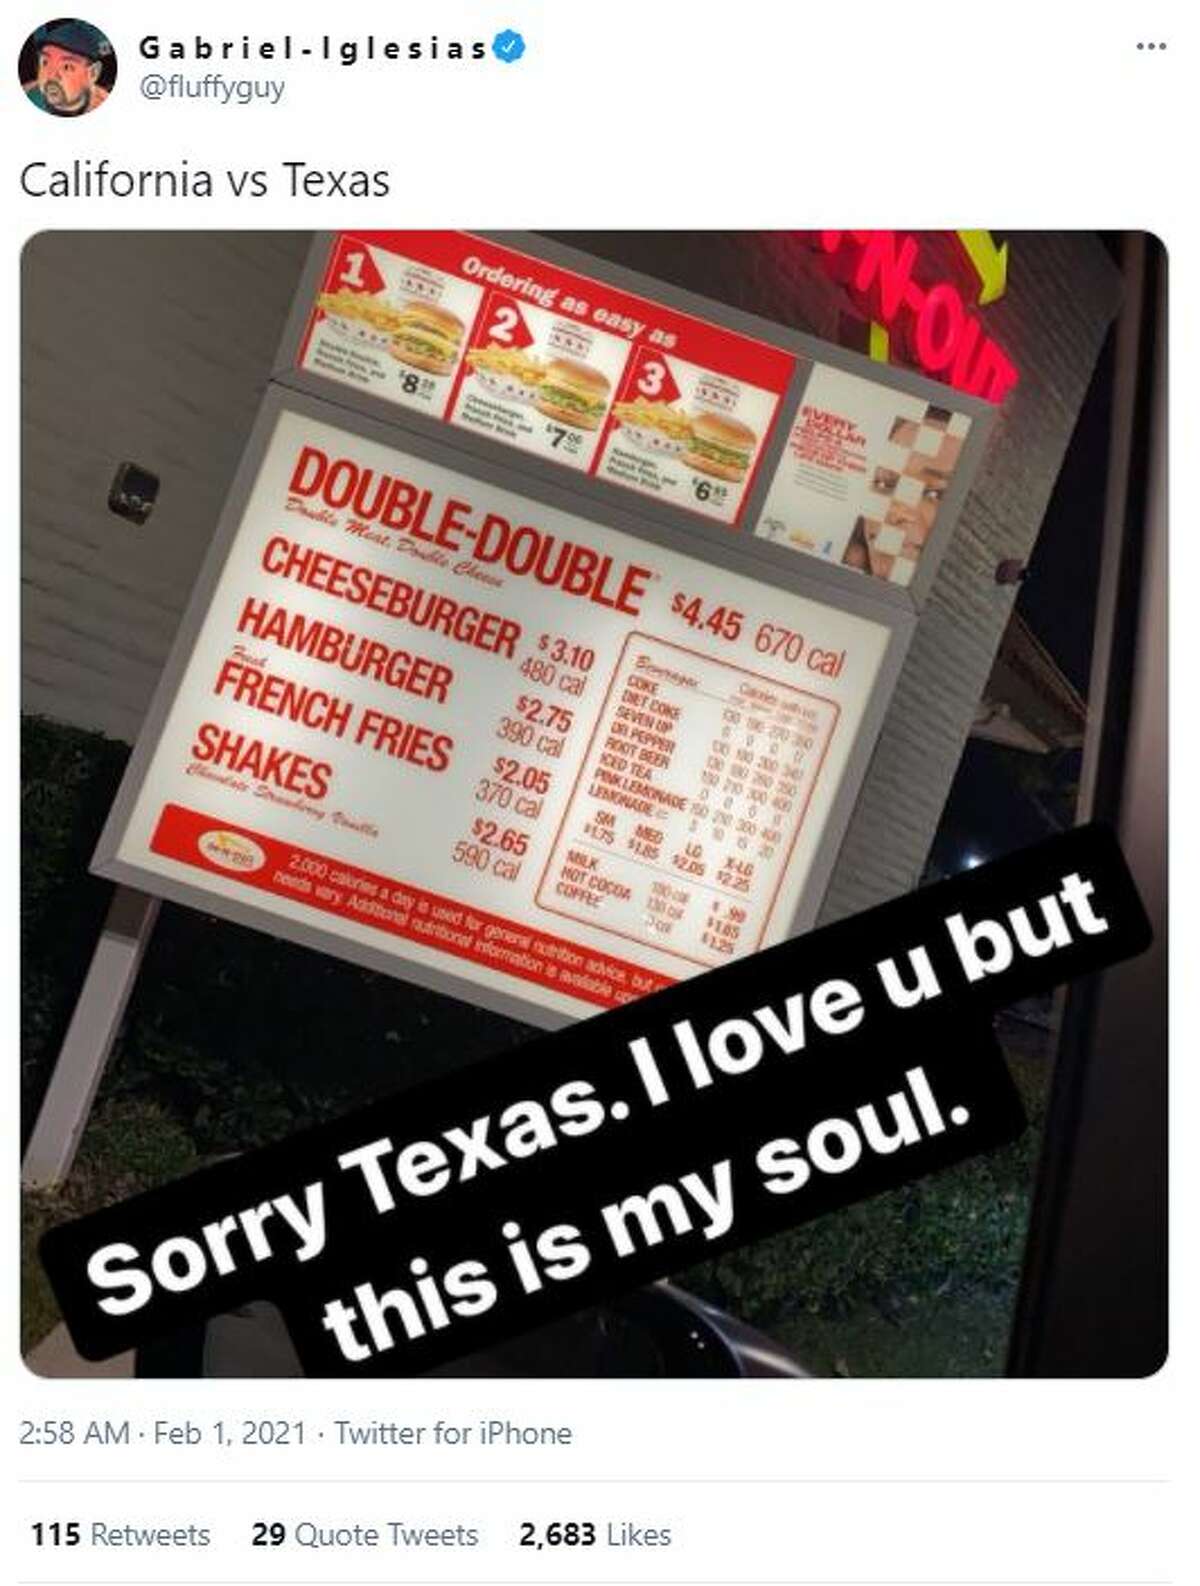 "California vs. Texas" comedian Gabriel Iglesias said "Sorry Texas. I love u but this is my soul"